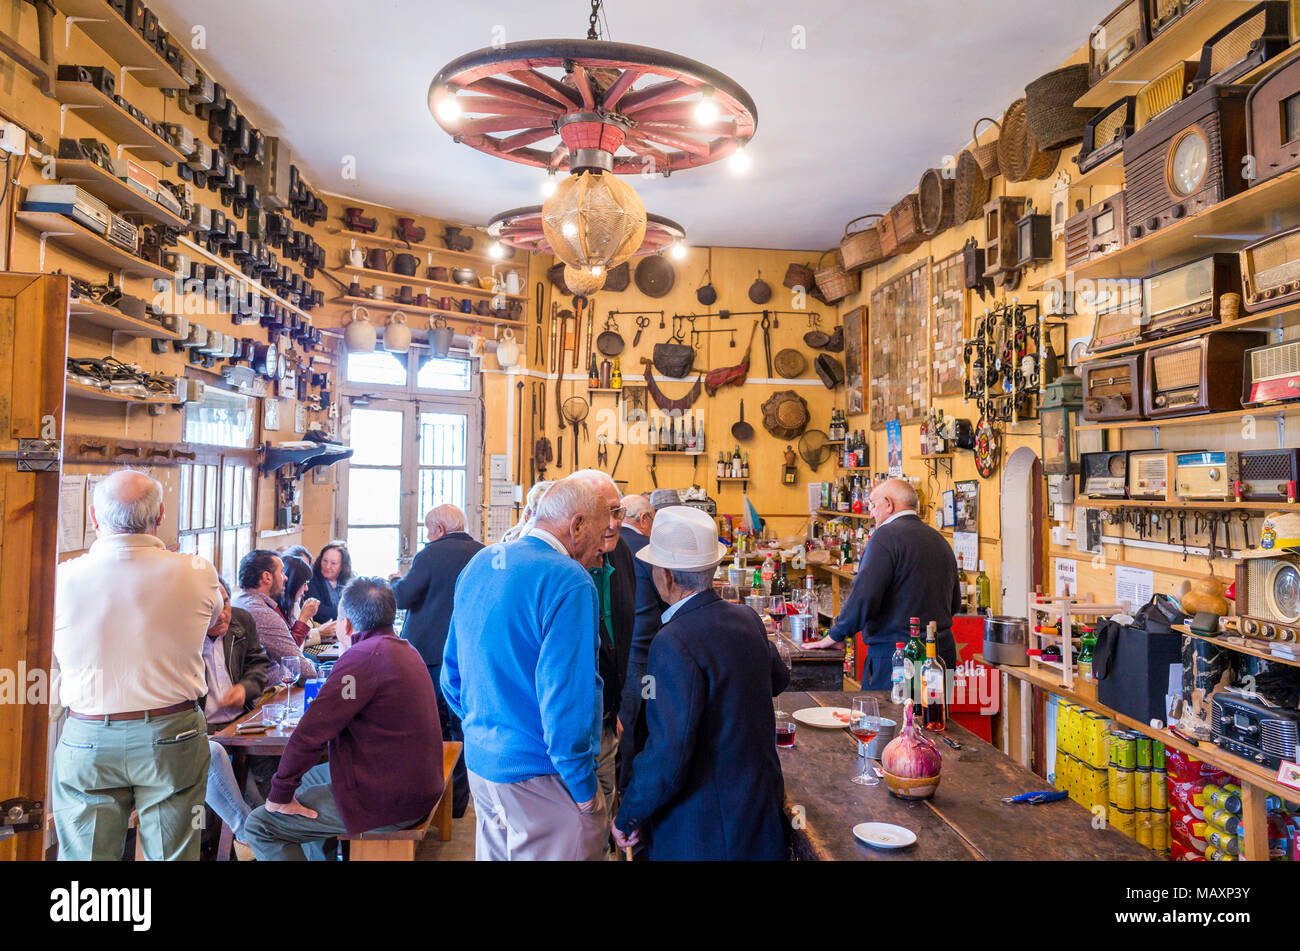 Innere der Bar in einem Dorf in Kastilien und Le-n, Spanien Stockfoto